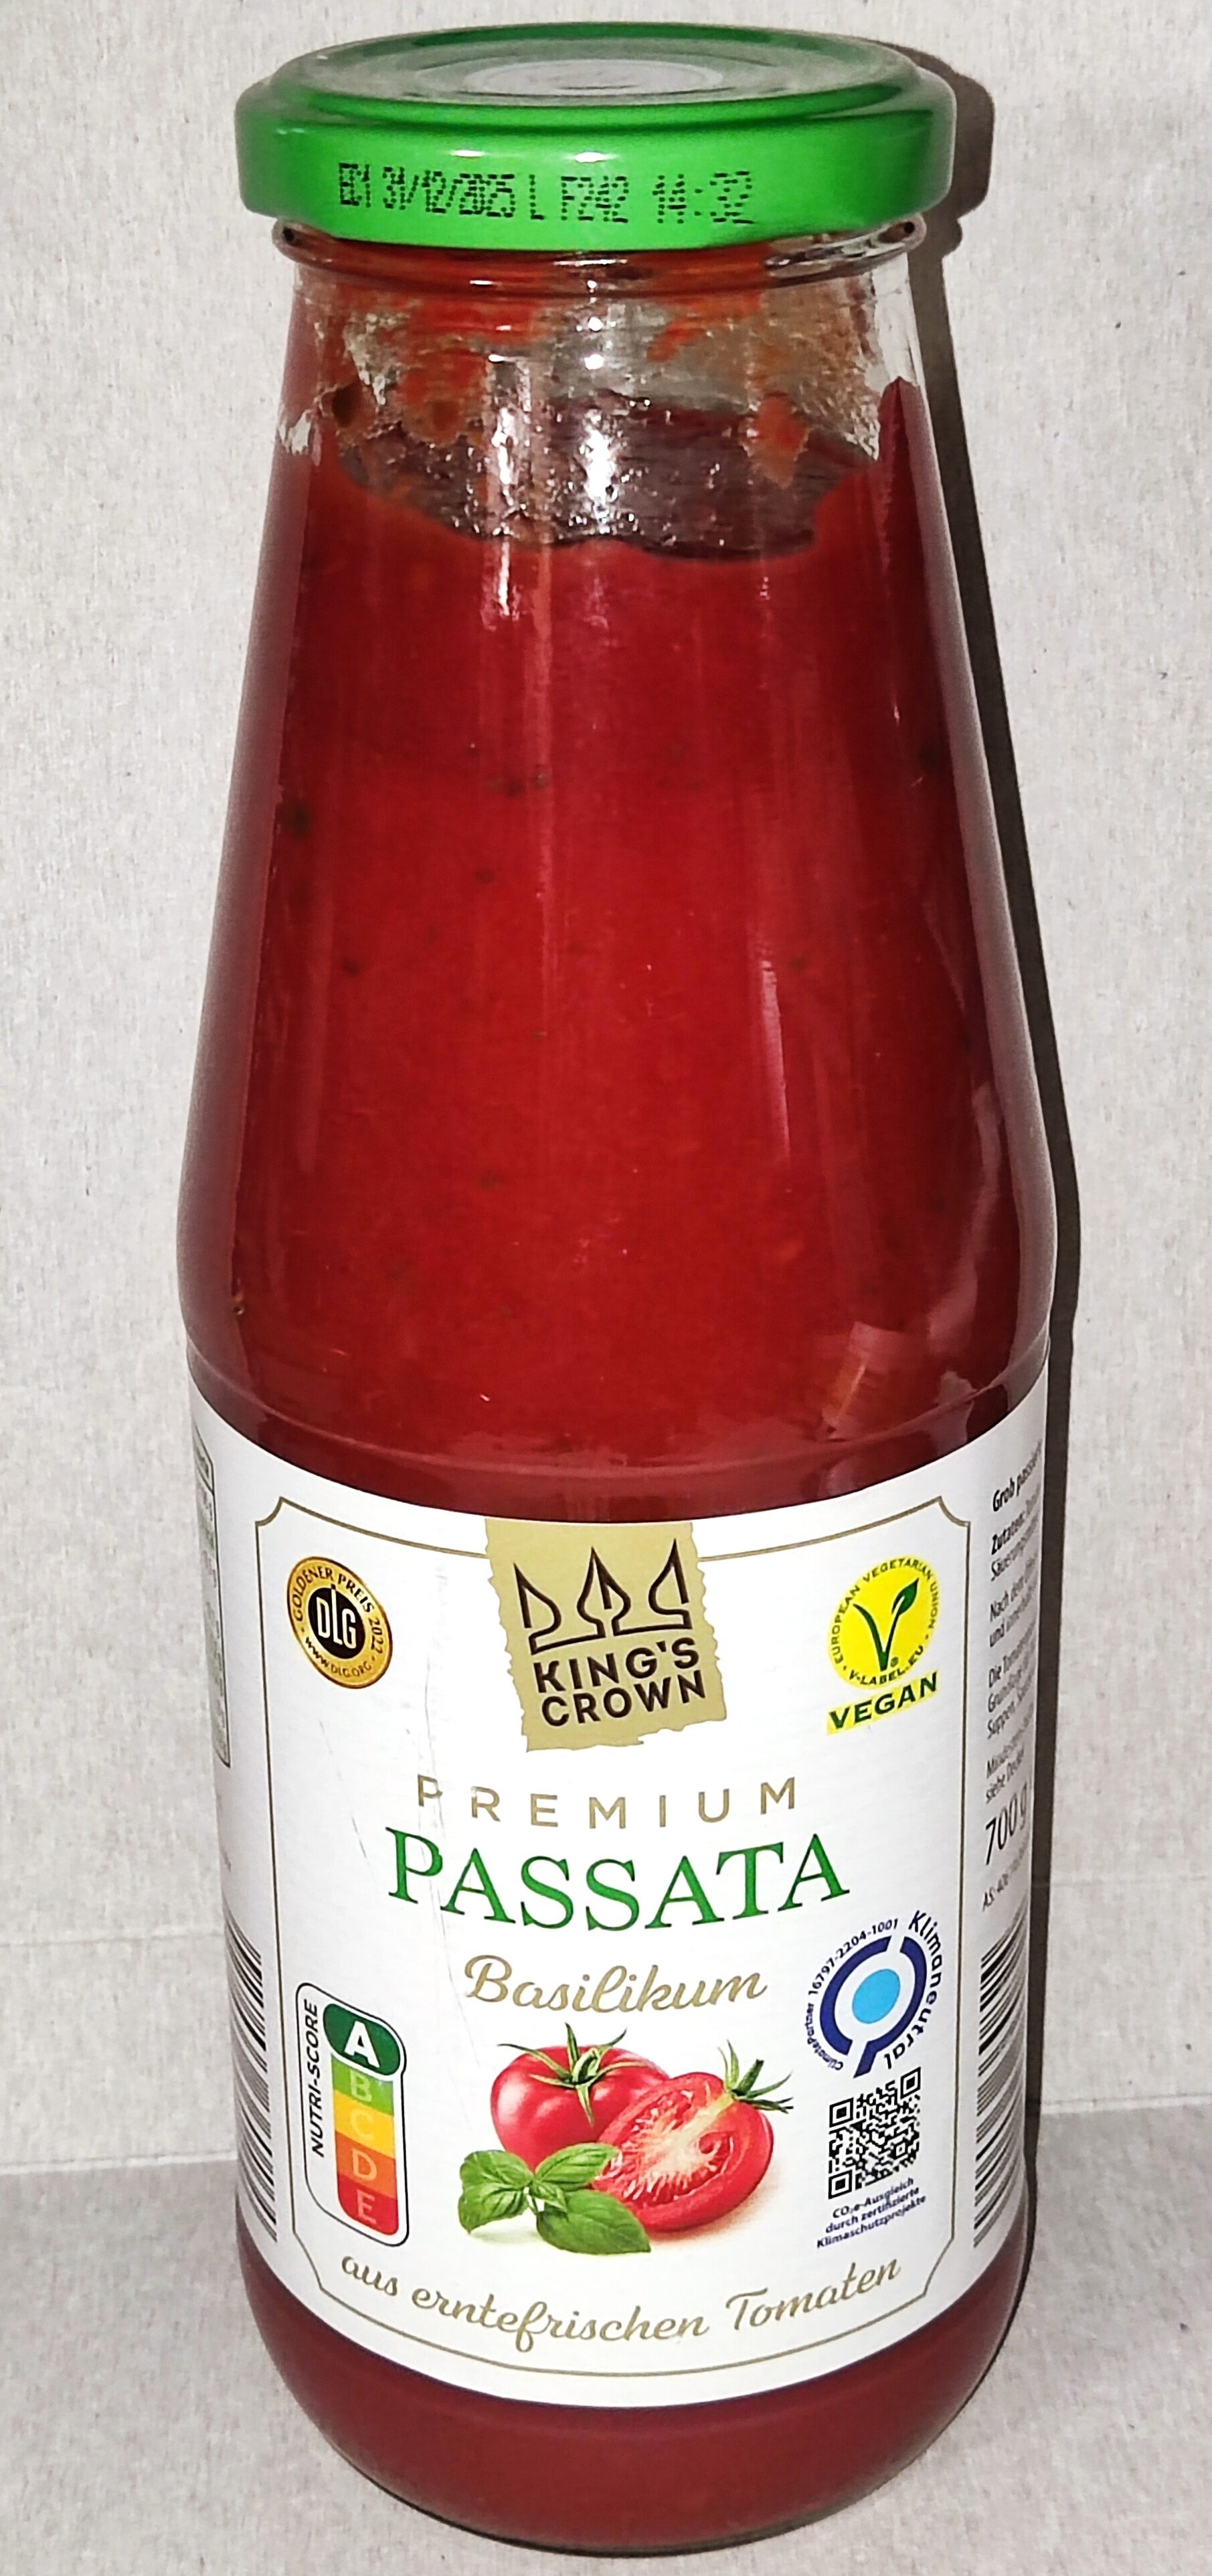 Premium-Passata - Basilikum - Produkt